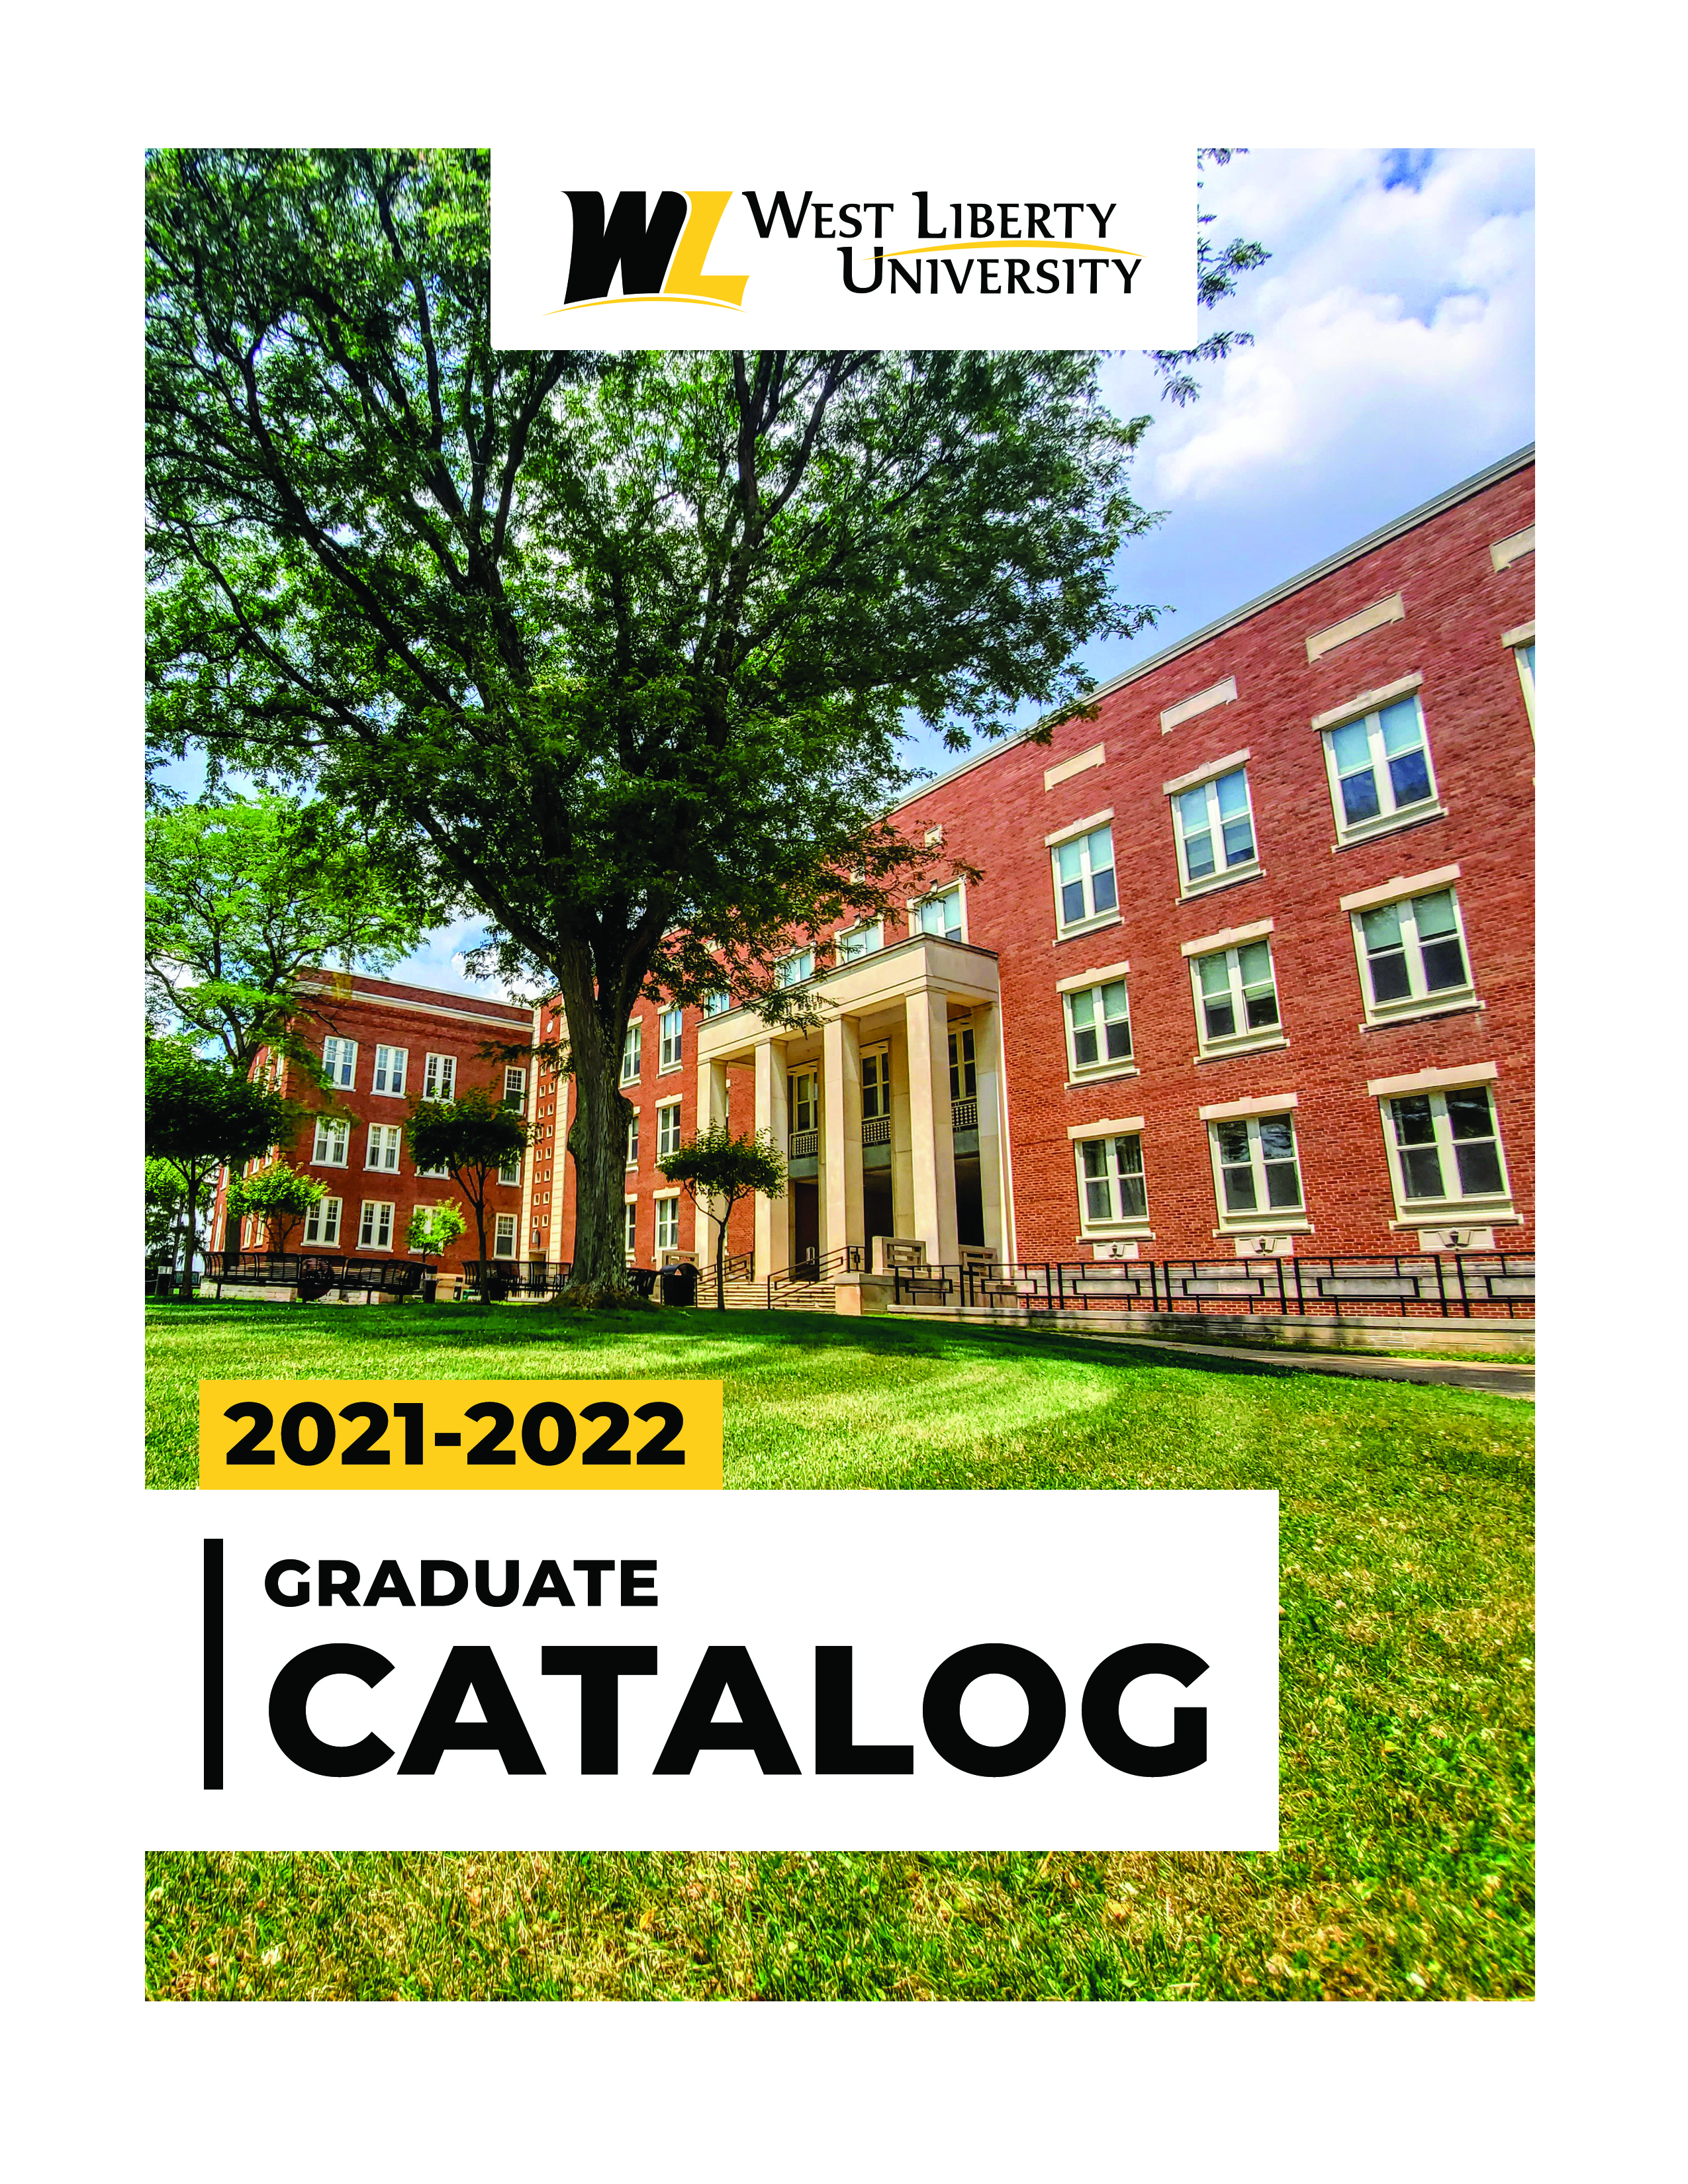 Graduate Catalog Cover